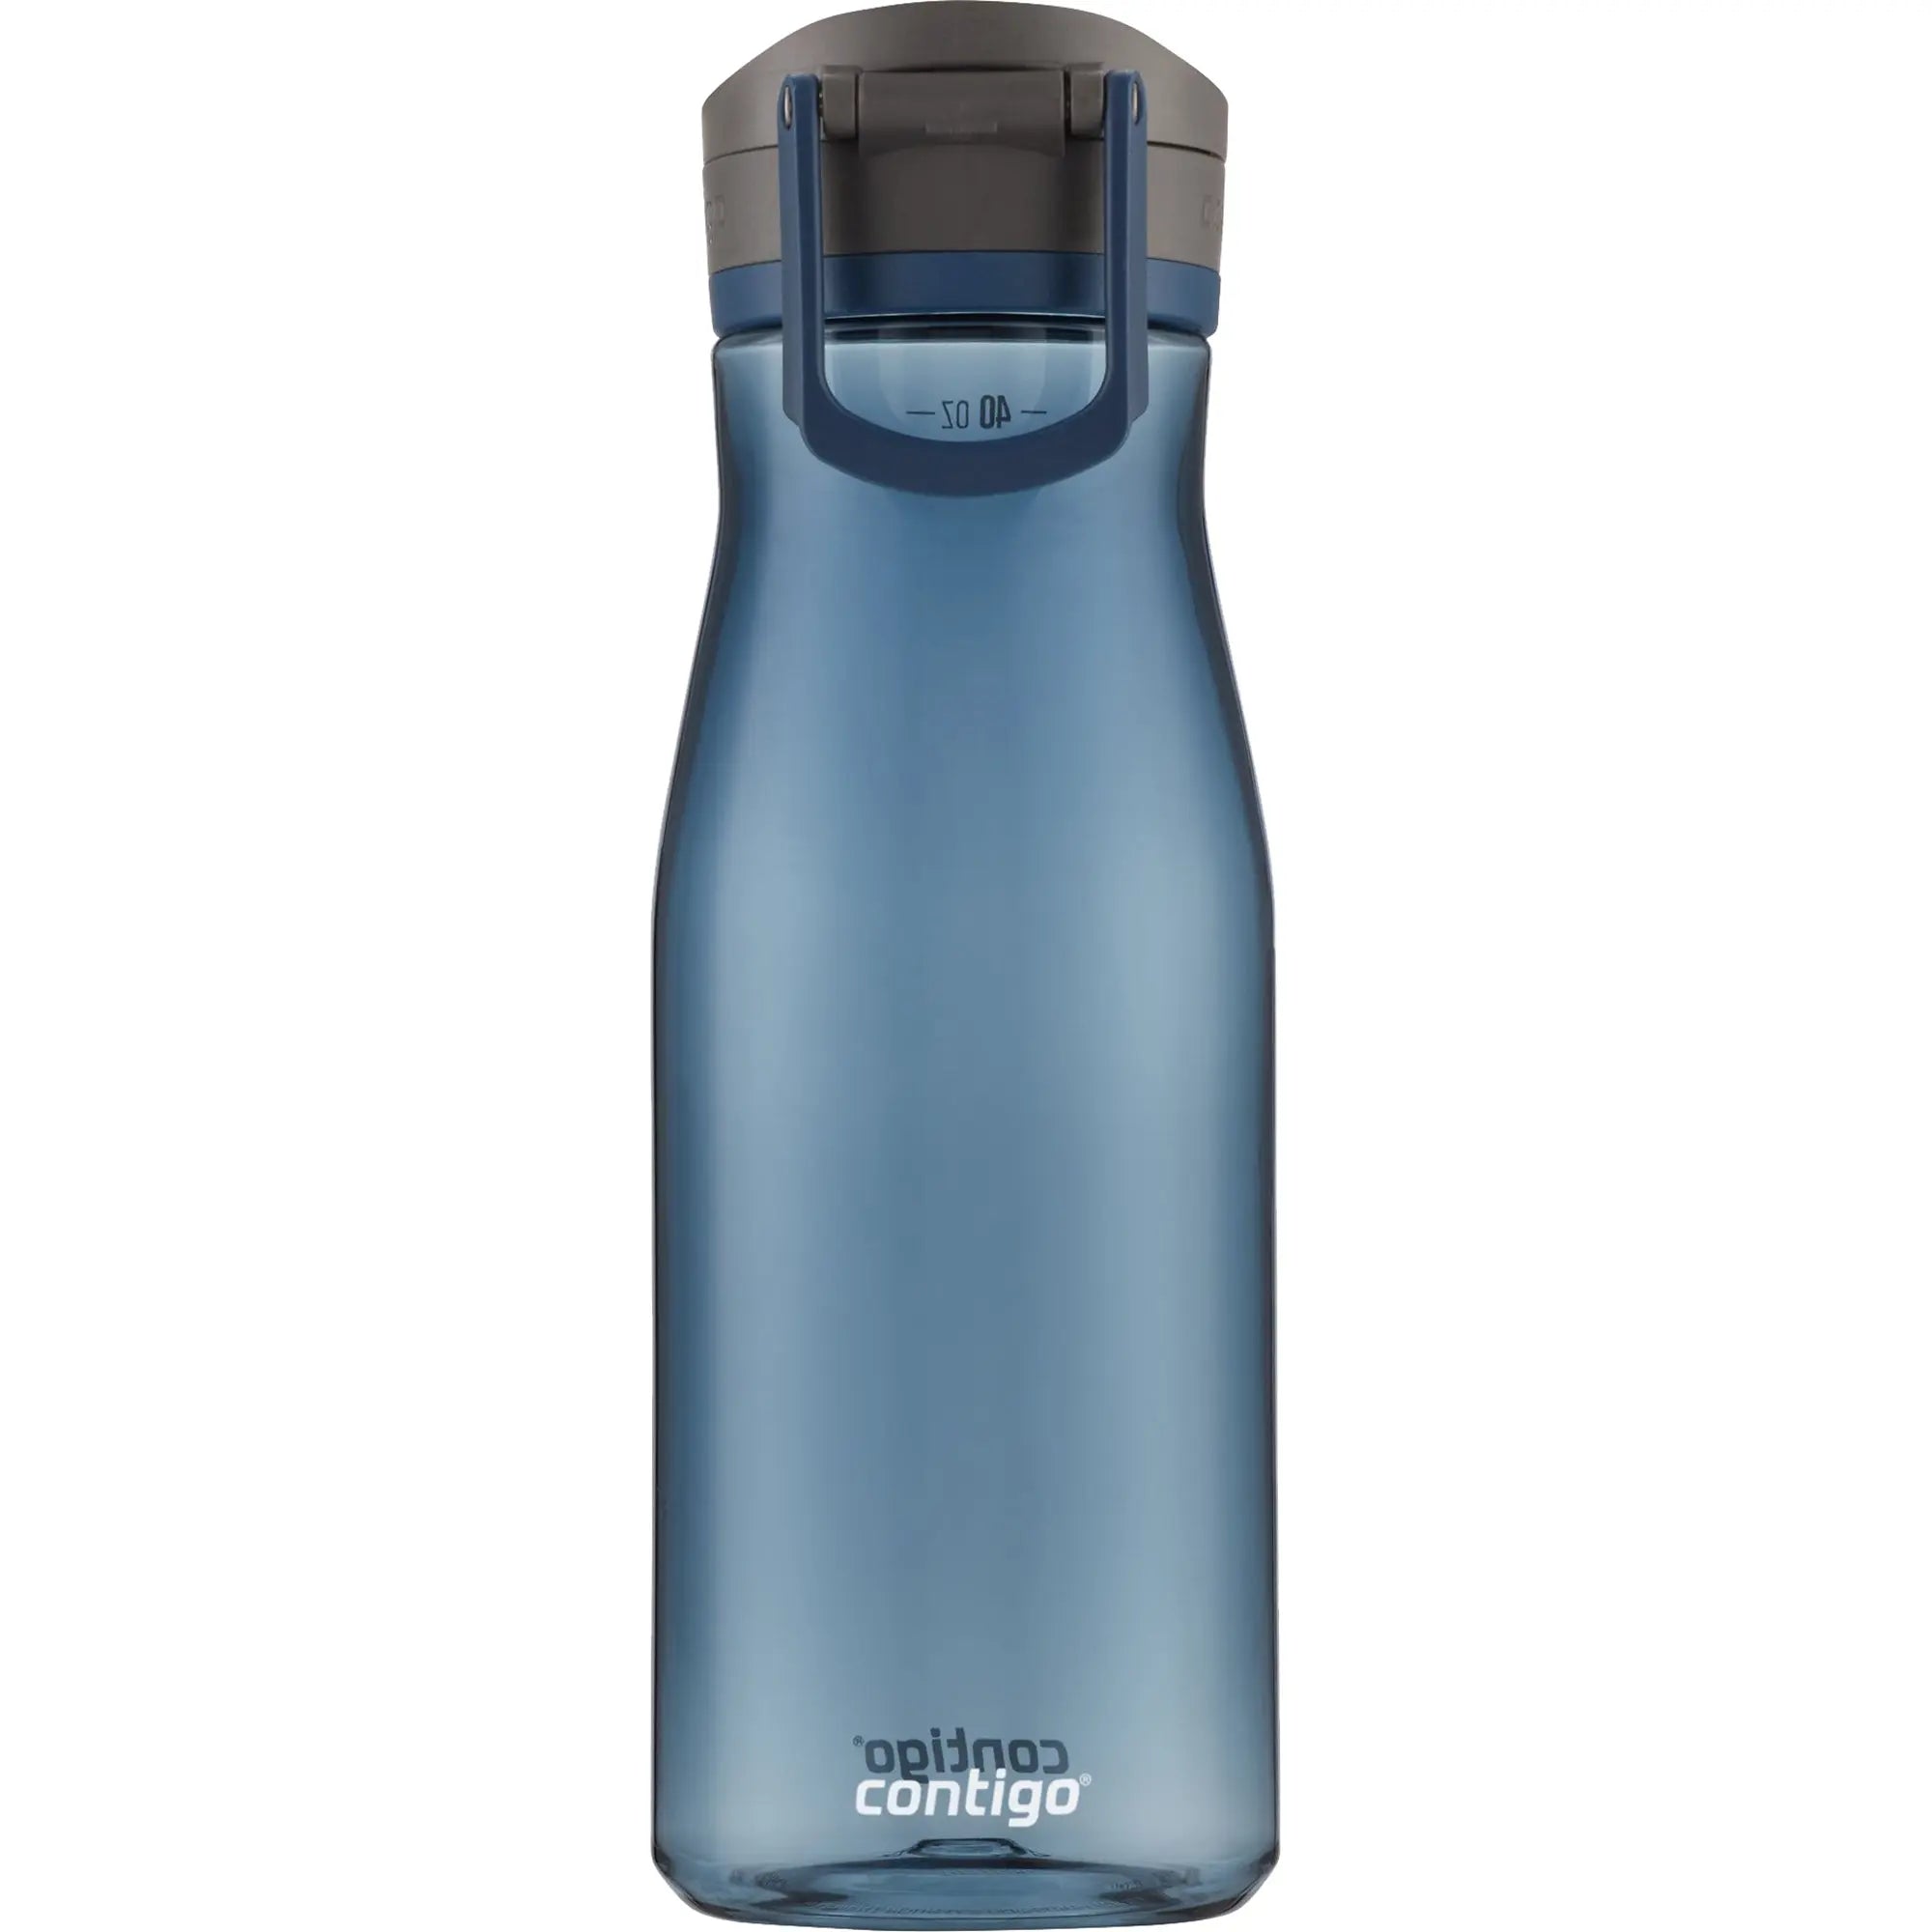 Contigo 40 oz. Jackson 2.0 Plastic Water Bottle - Blueberry Contigo